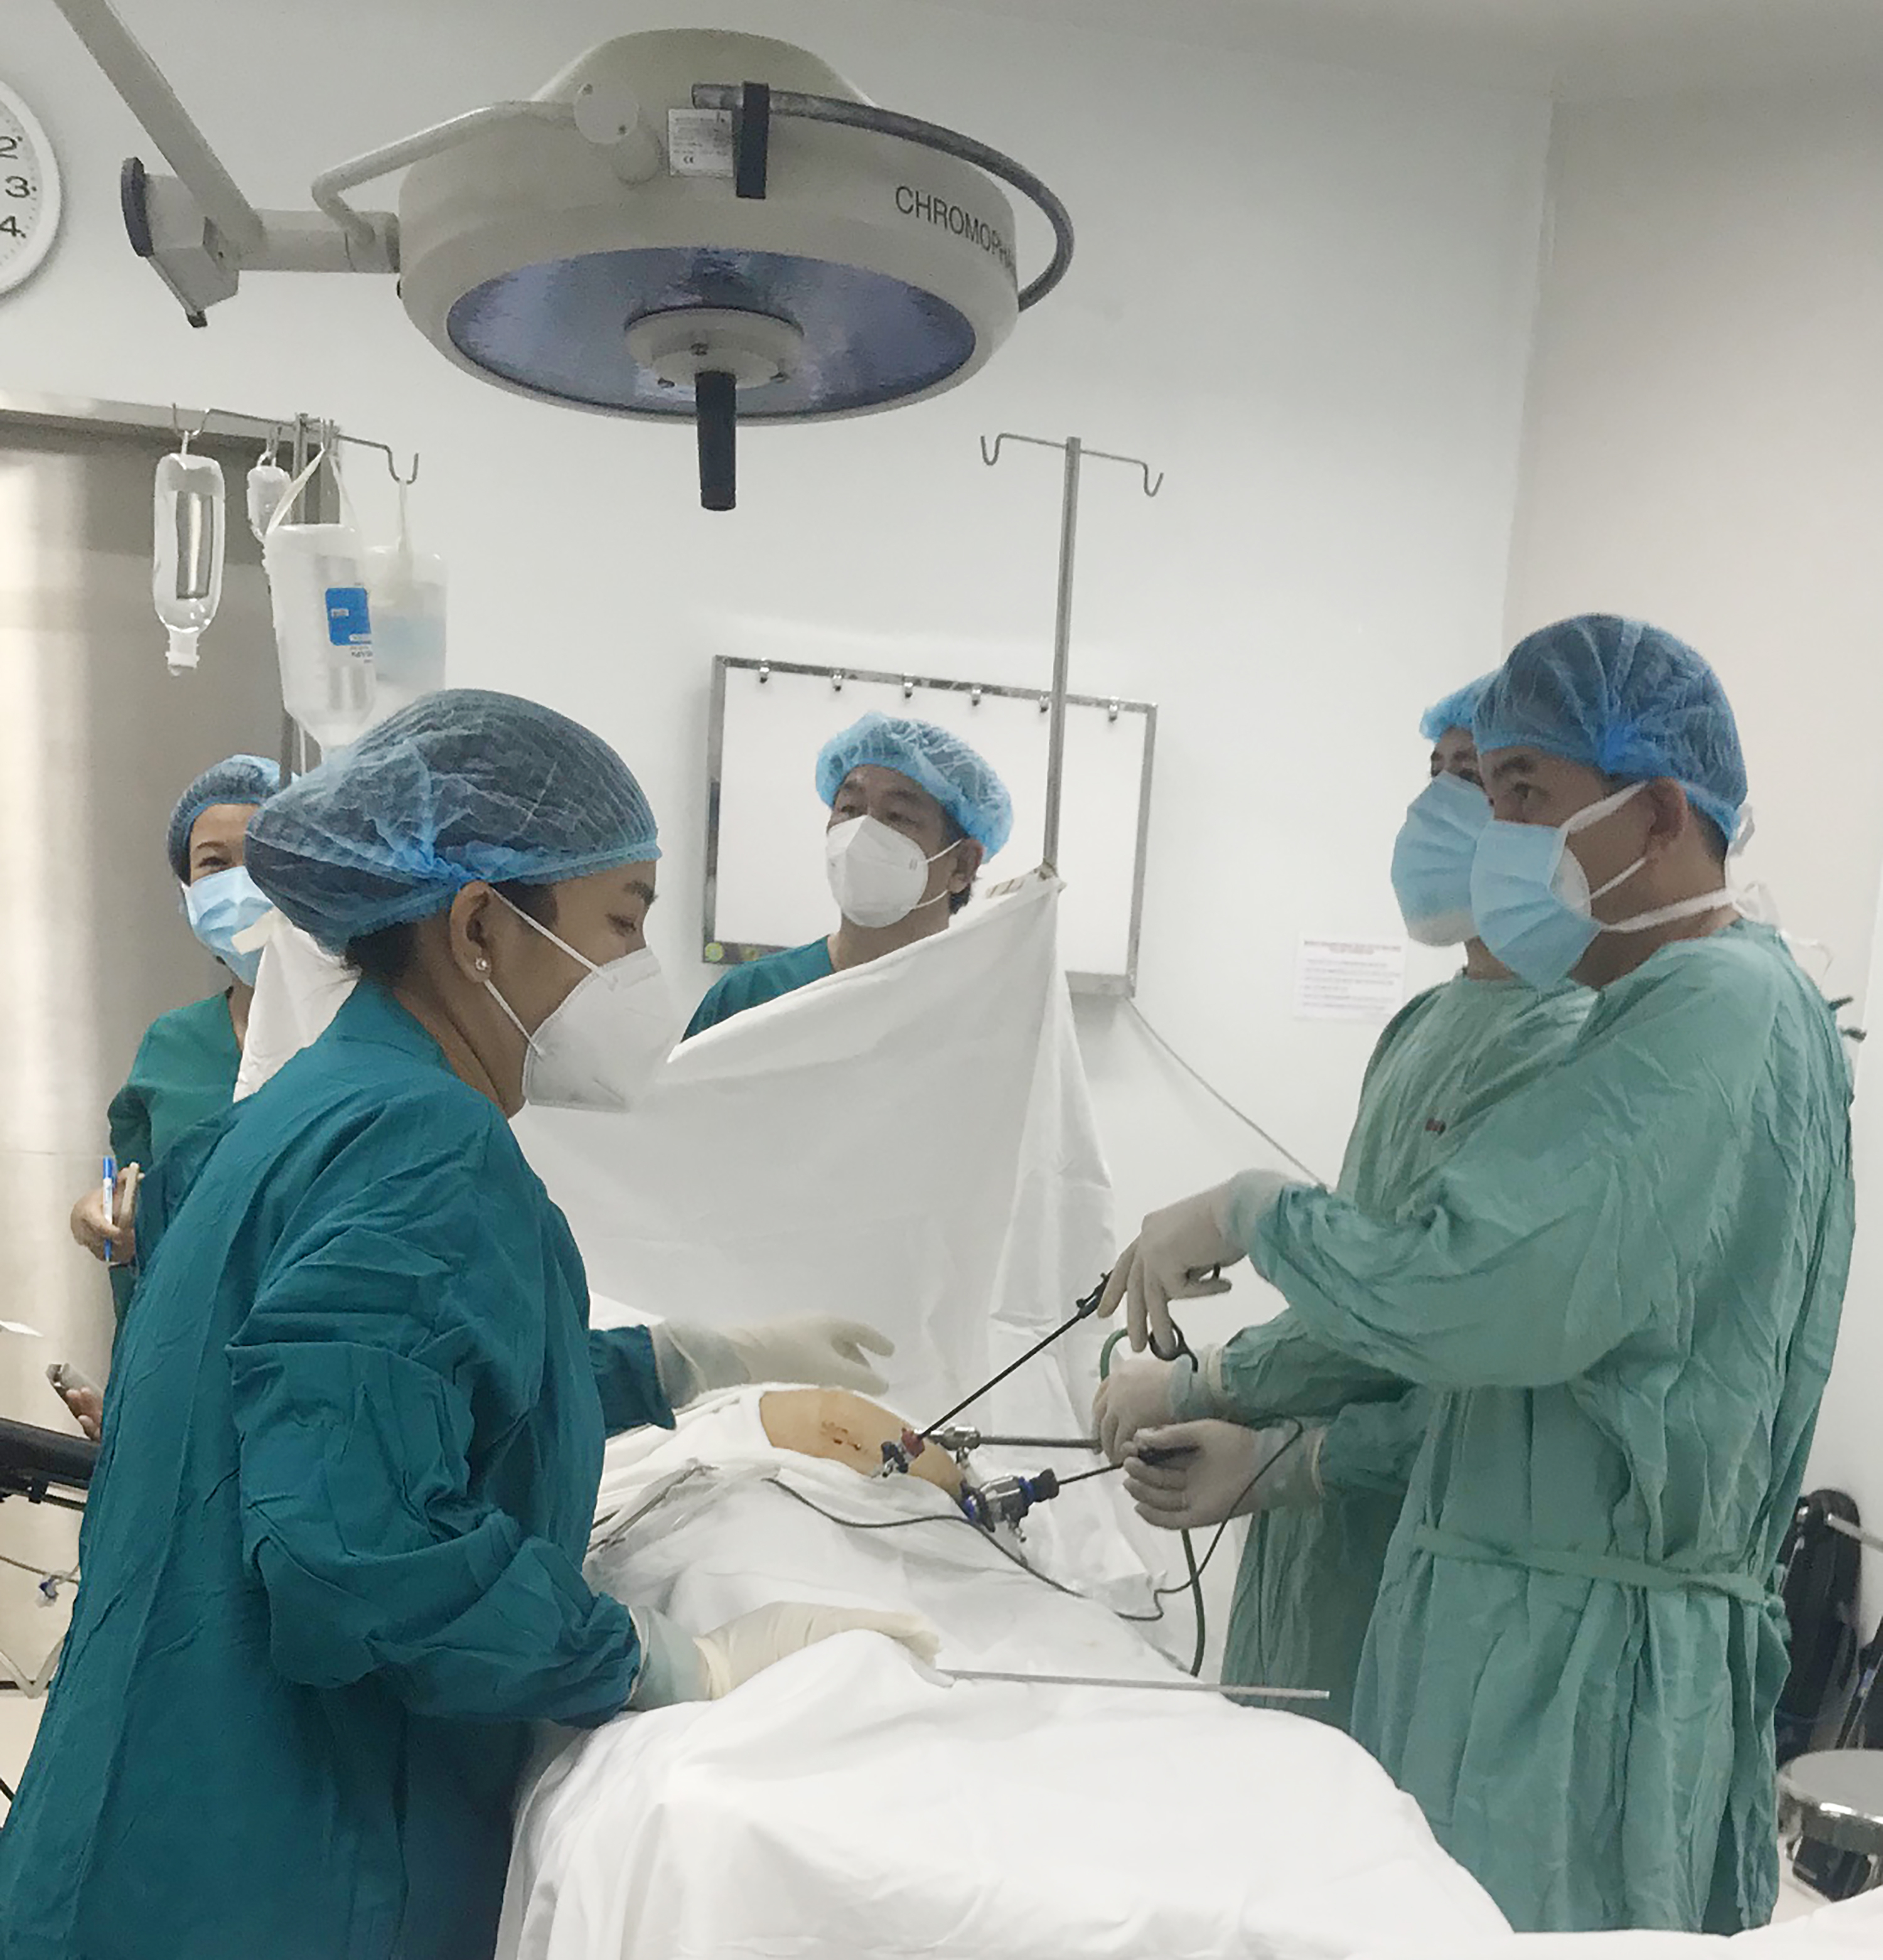 Các bác sĩ Bệnh viện Nguyễn Tri Phương tiến hành phẫu thuật nội soi khối u nhầy ruột thừa cho bệnh nhân 71 tuổi. Ảnh: Bệnh viện cung cấp.